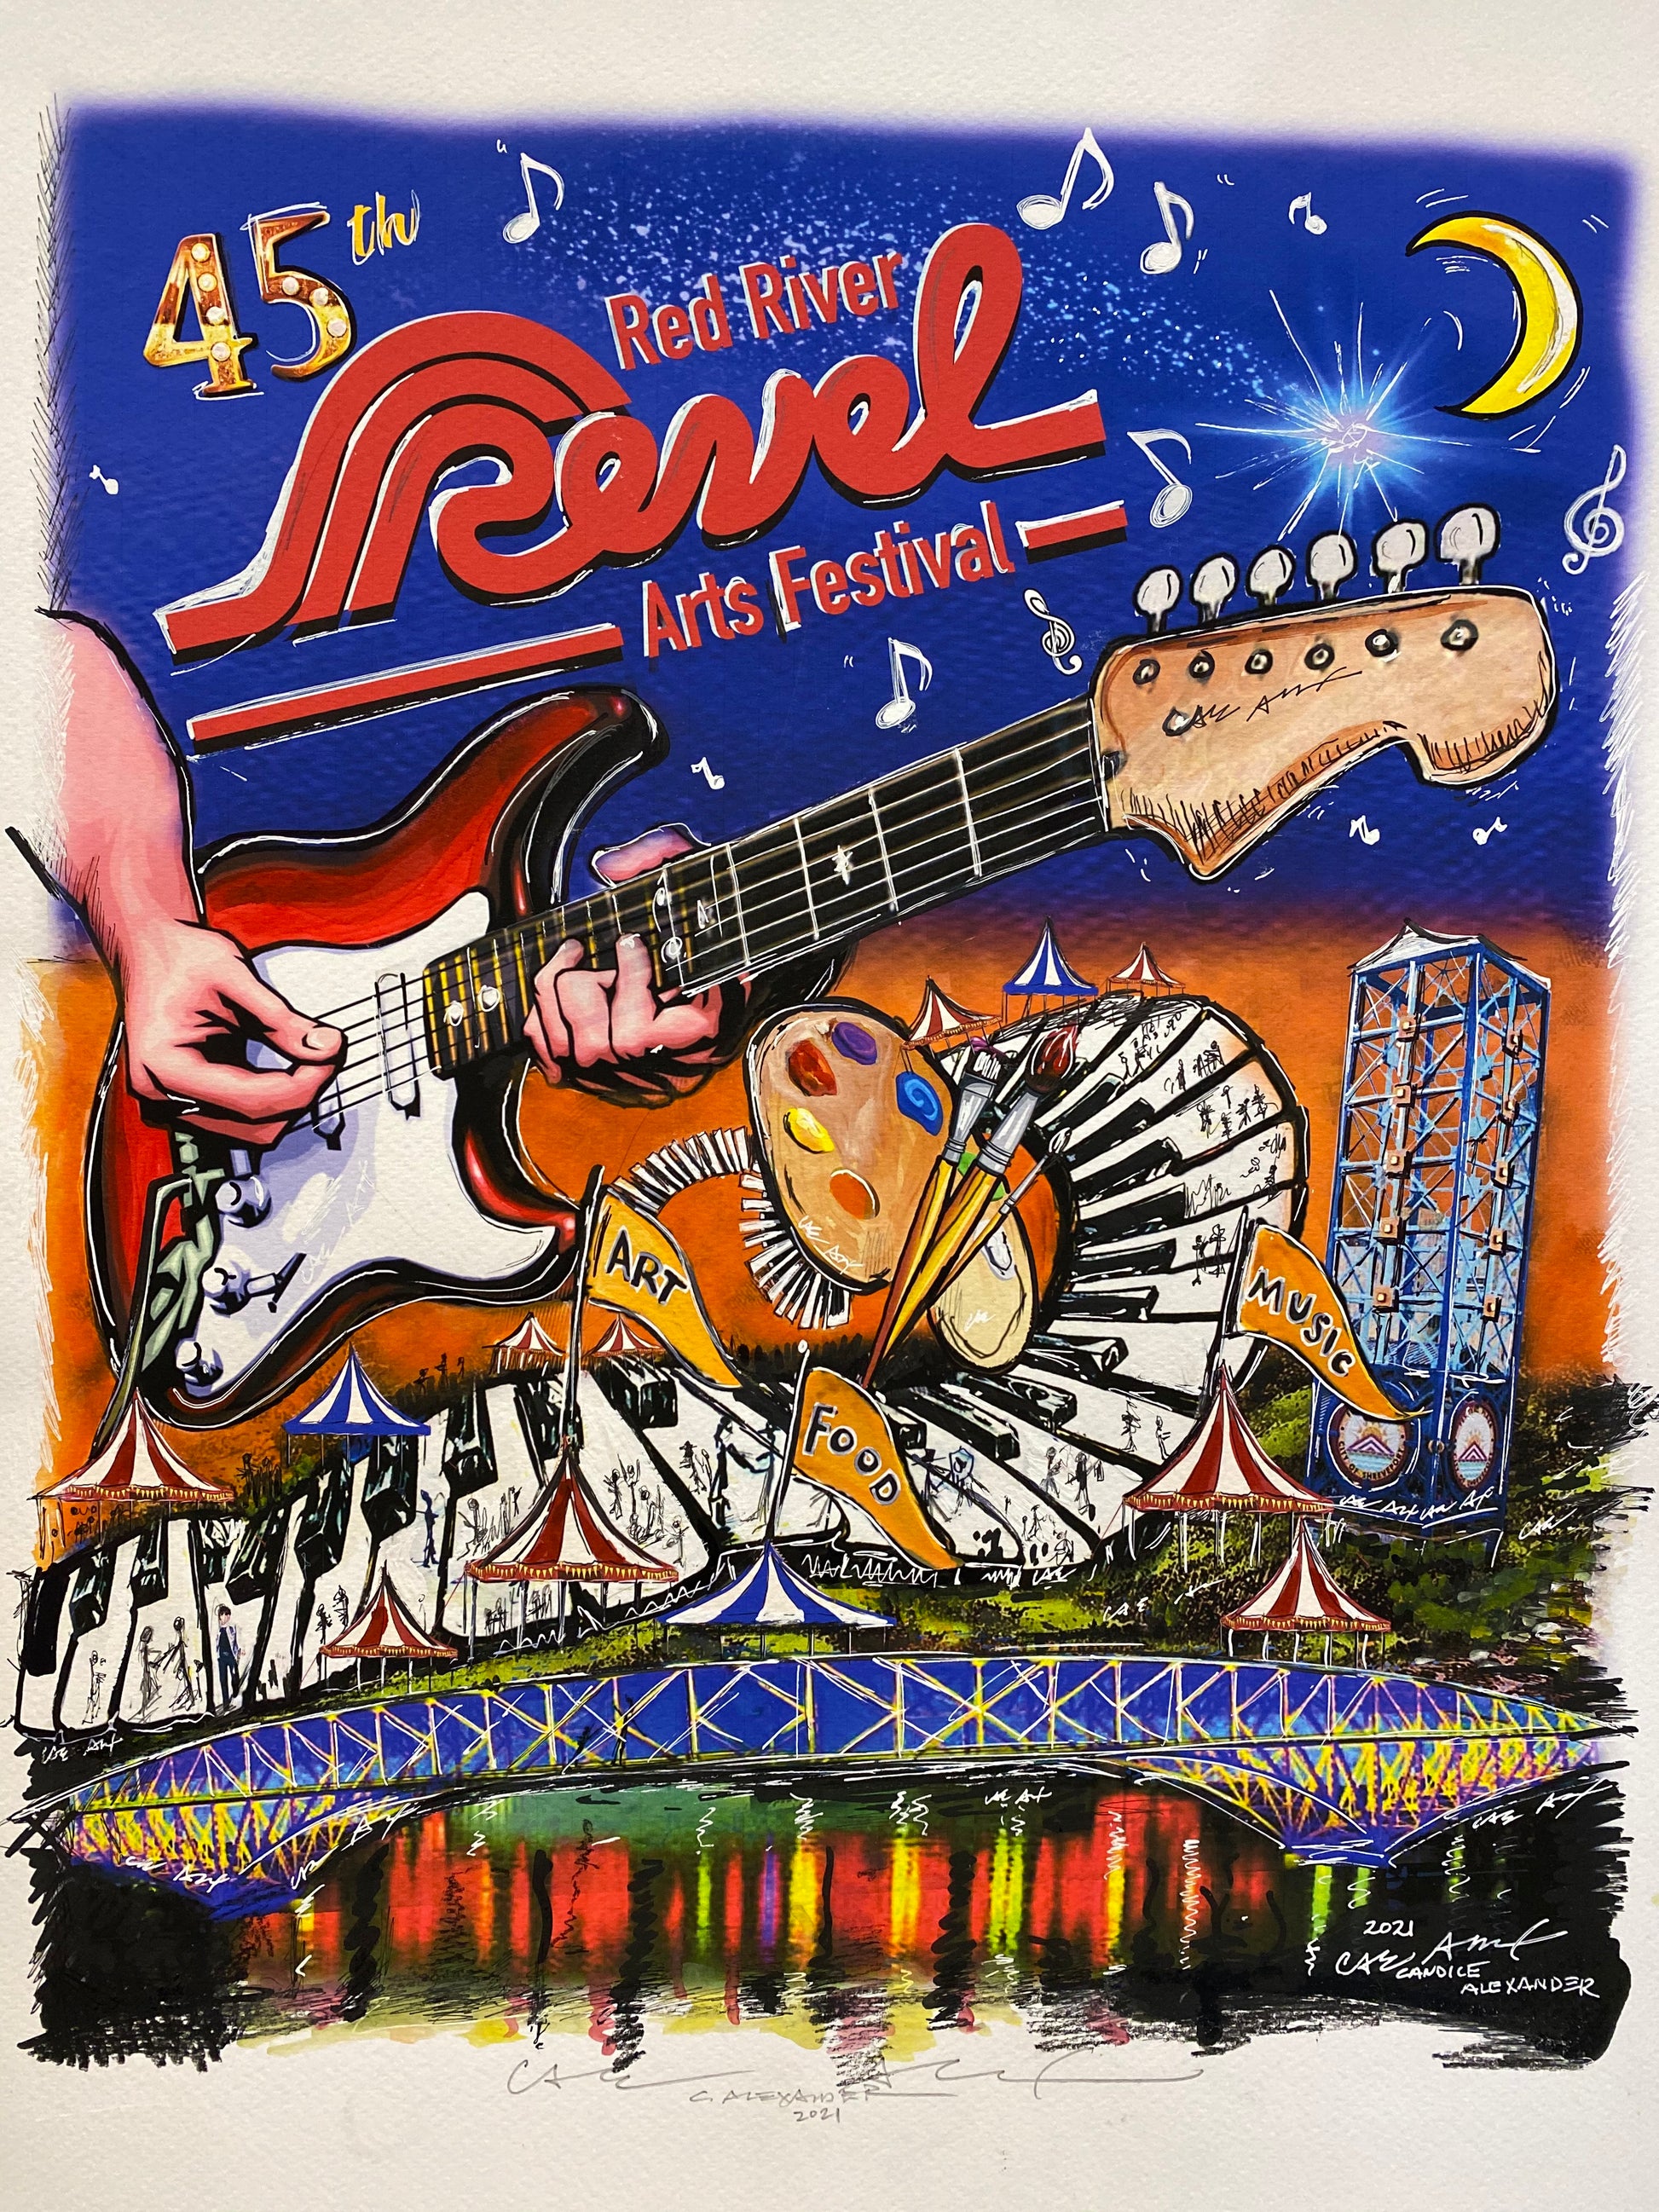 Shreveport, La, Louisiana, Alexander Art, Candice Alexander, Revel, Festival, Red River, Art Festival, Art Poster